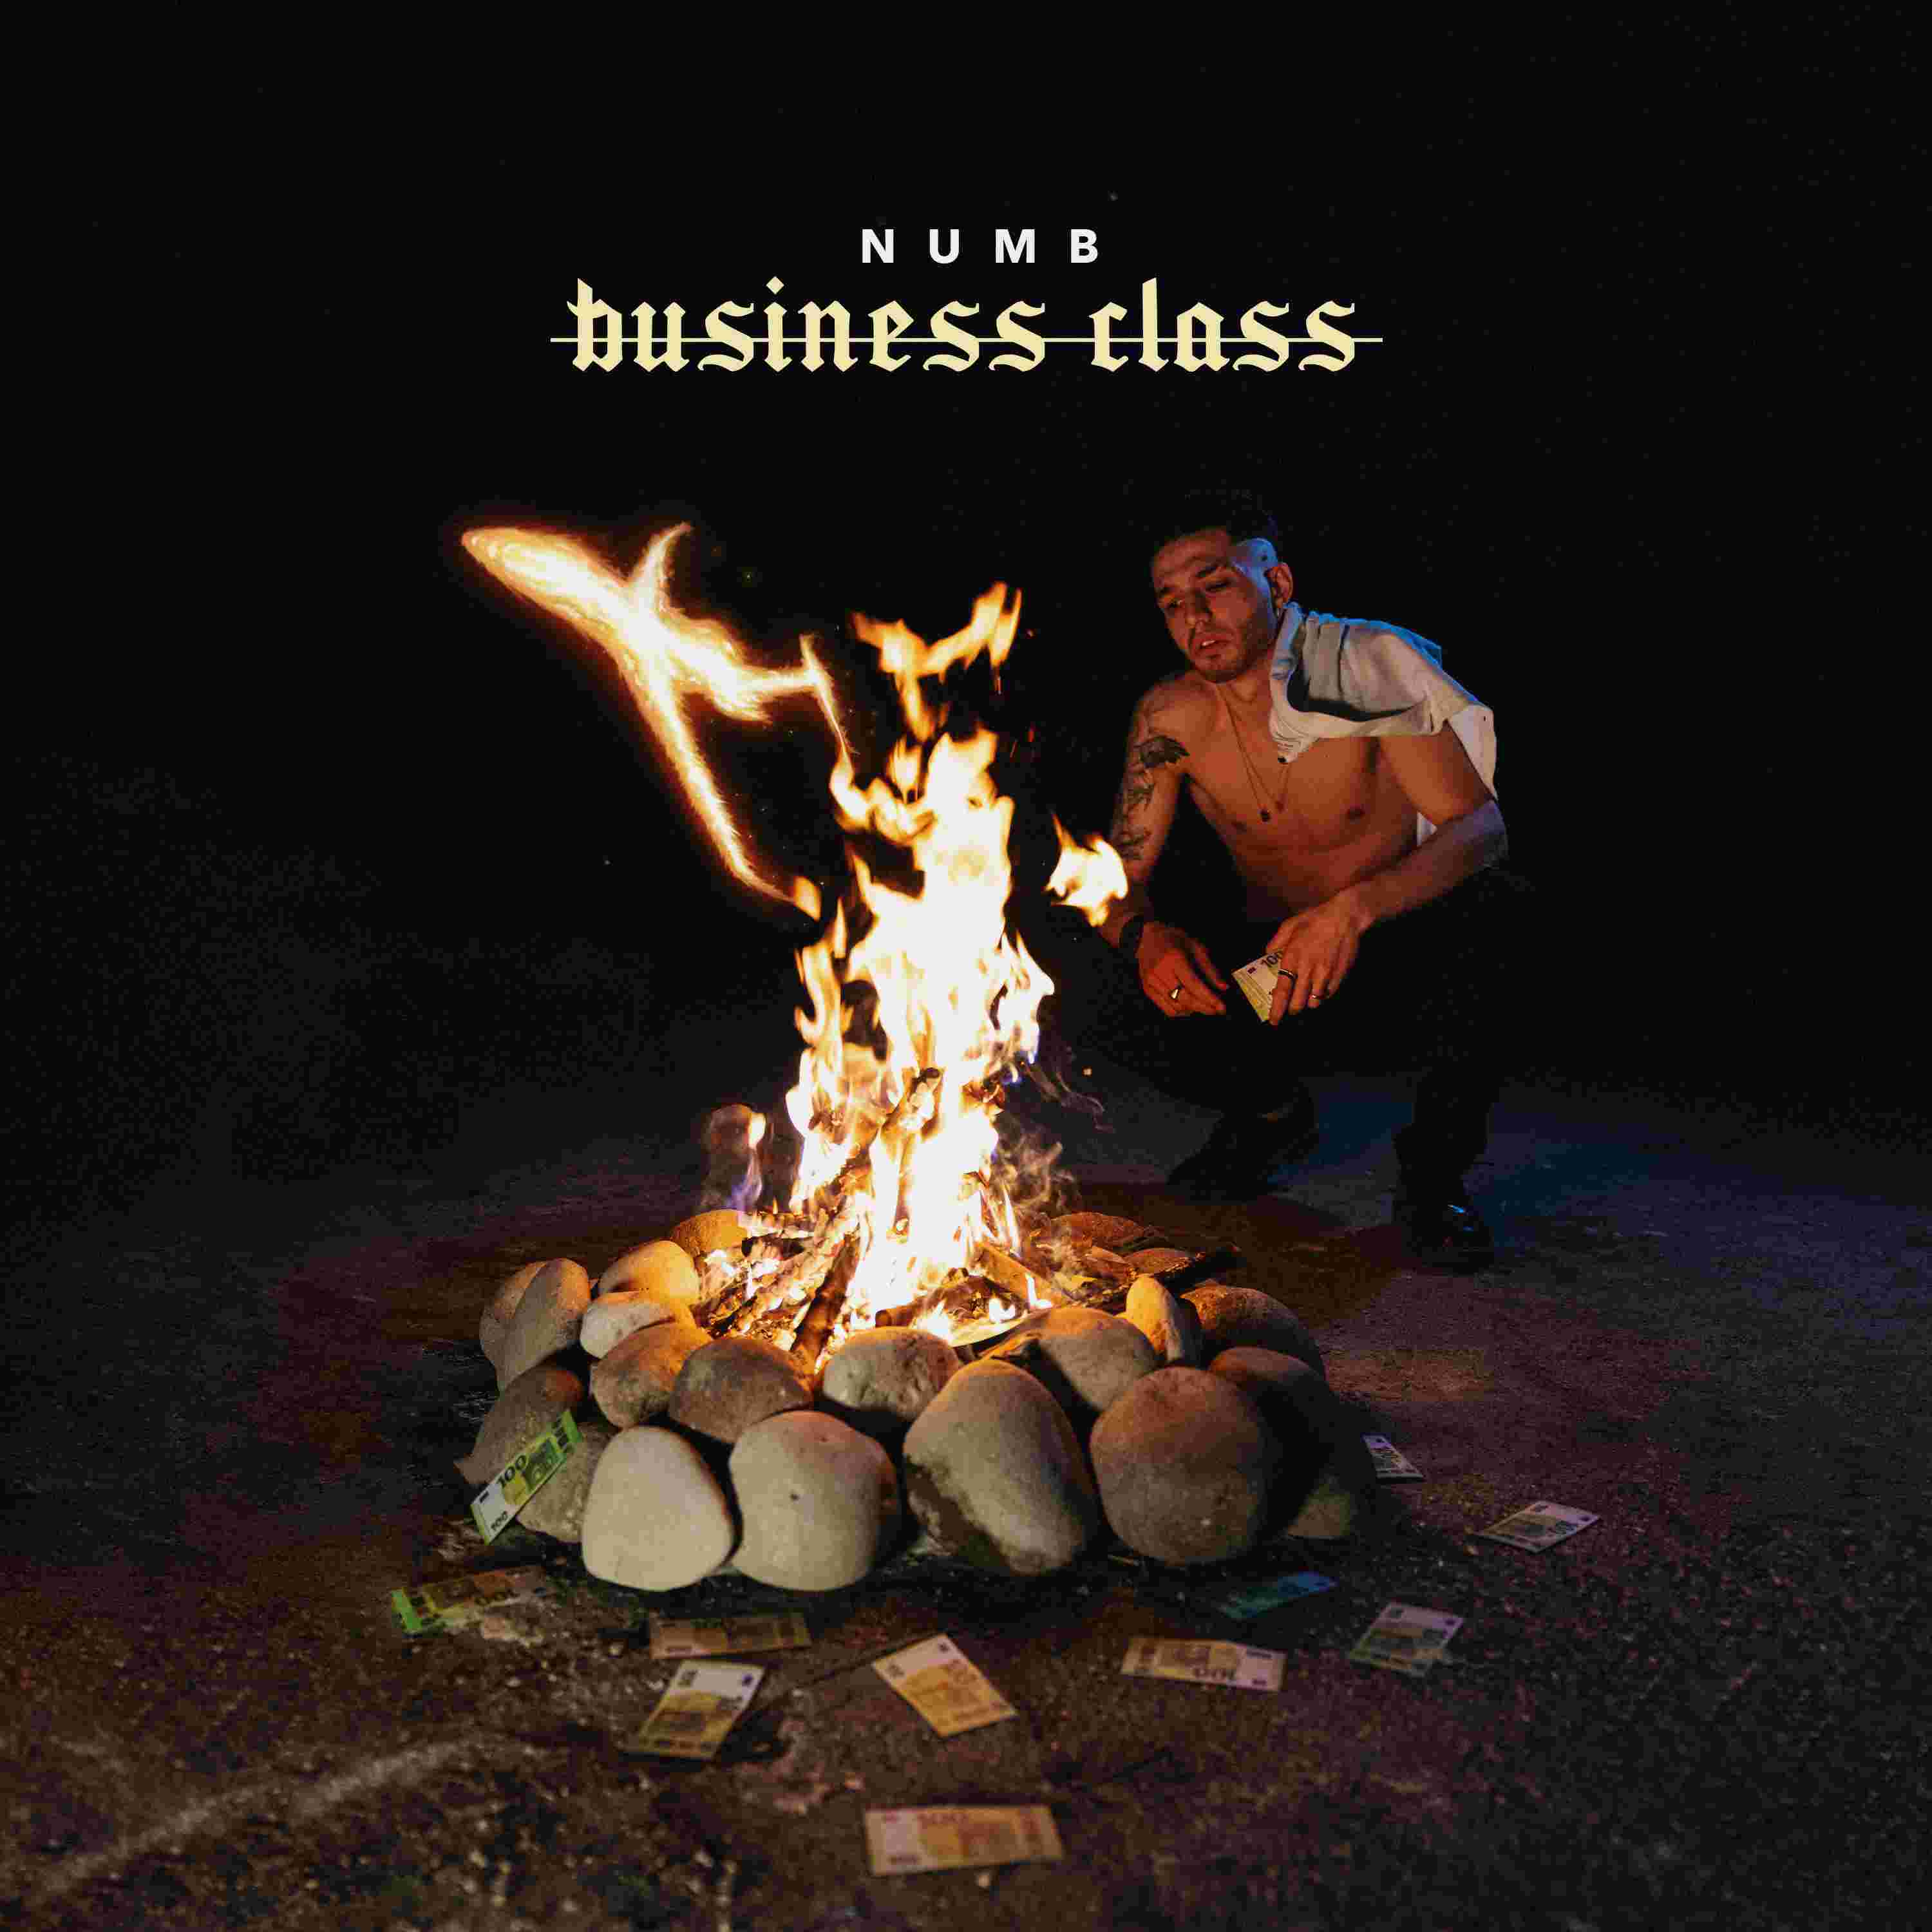 NUMB e EALI feat TOKYO, “Business Class” è il nuovo singolo del rapper veneto